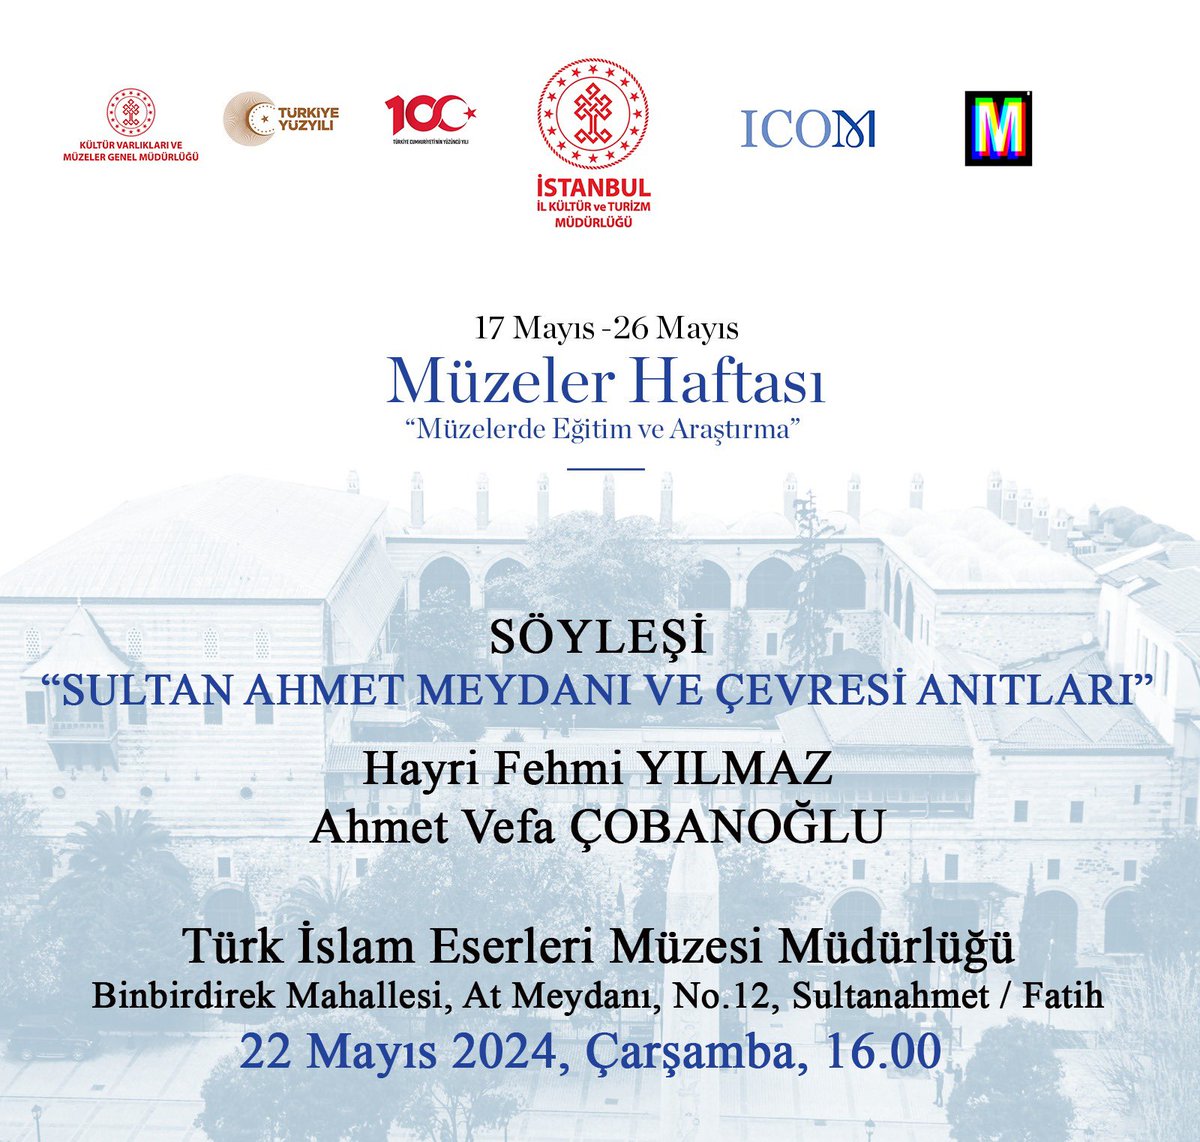 17 Mayıs - 26 Mayıs Müzeler Haftası kapsamında Hayri Fehmi Yılmaz ve Ahmet Vefa Çobanoğlu’nun katılımıyla “Sultanahmet Meydanı ve Çevresi Anıtları” söyleşisi Türk ve İslam Eserleri Müzesindende gerçekleşecektir.